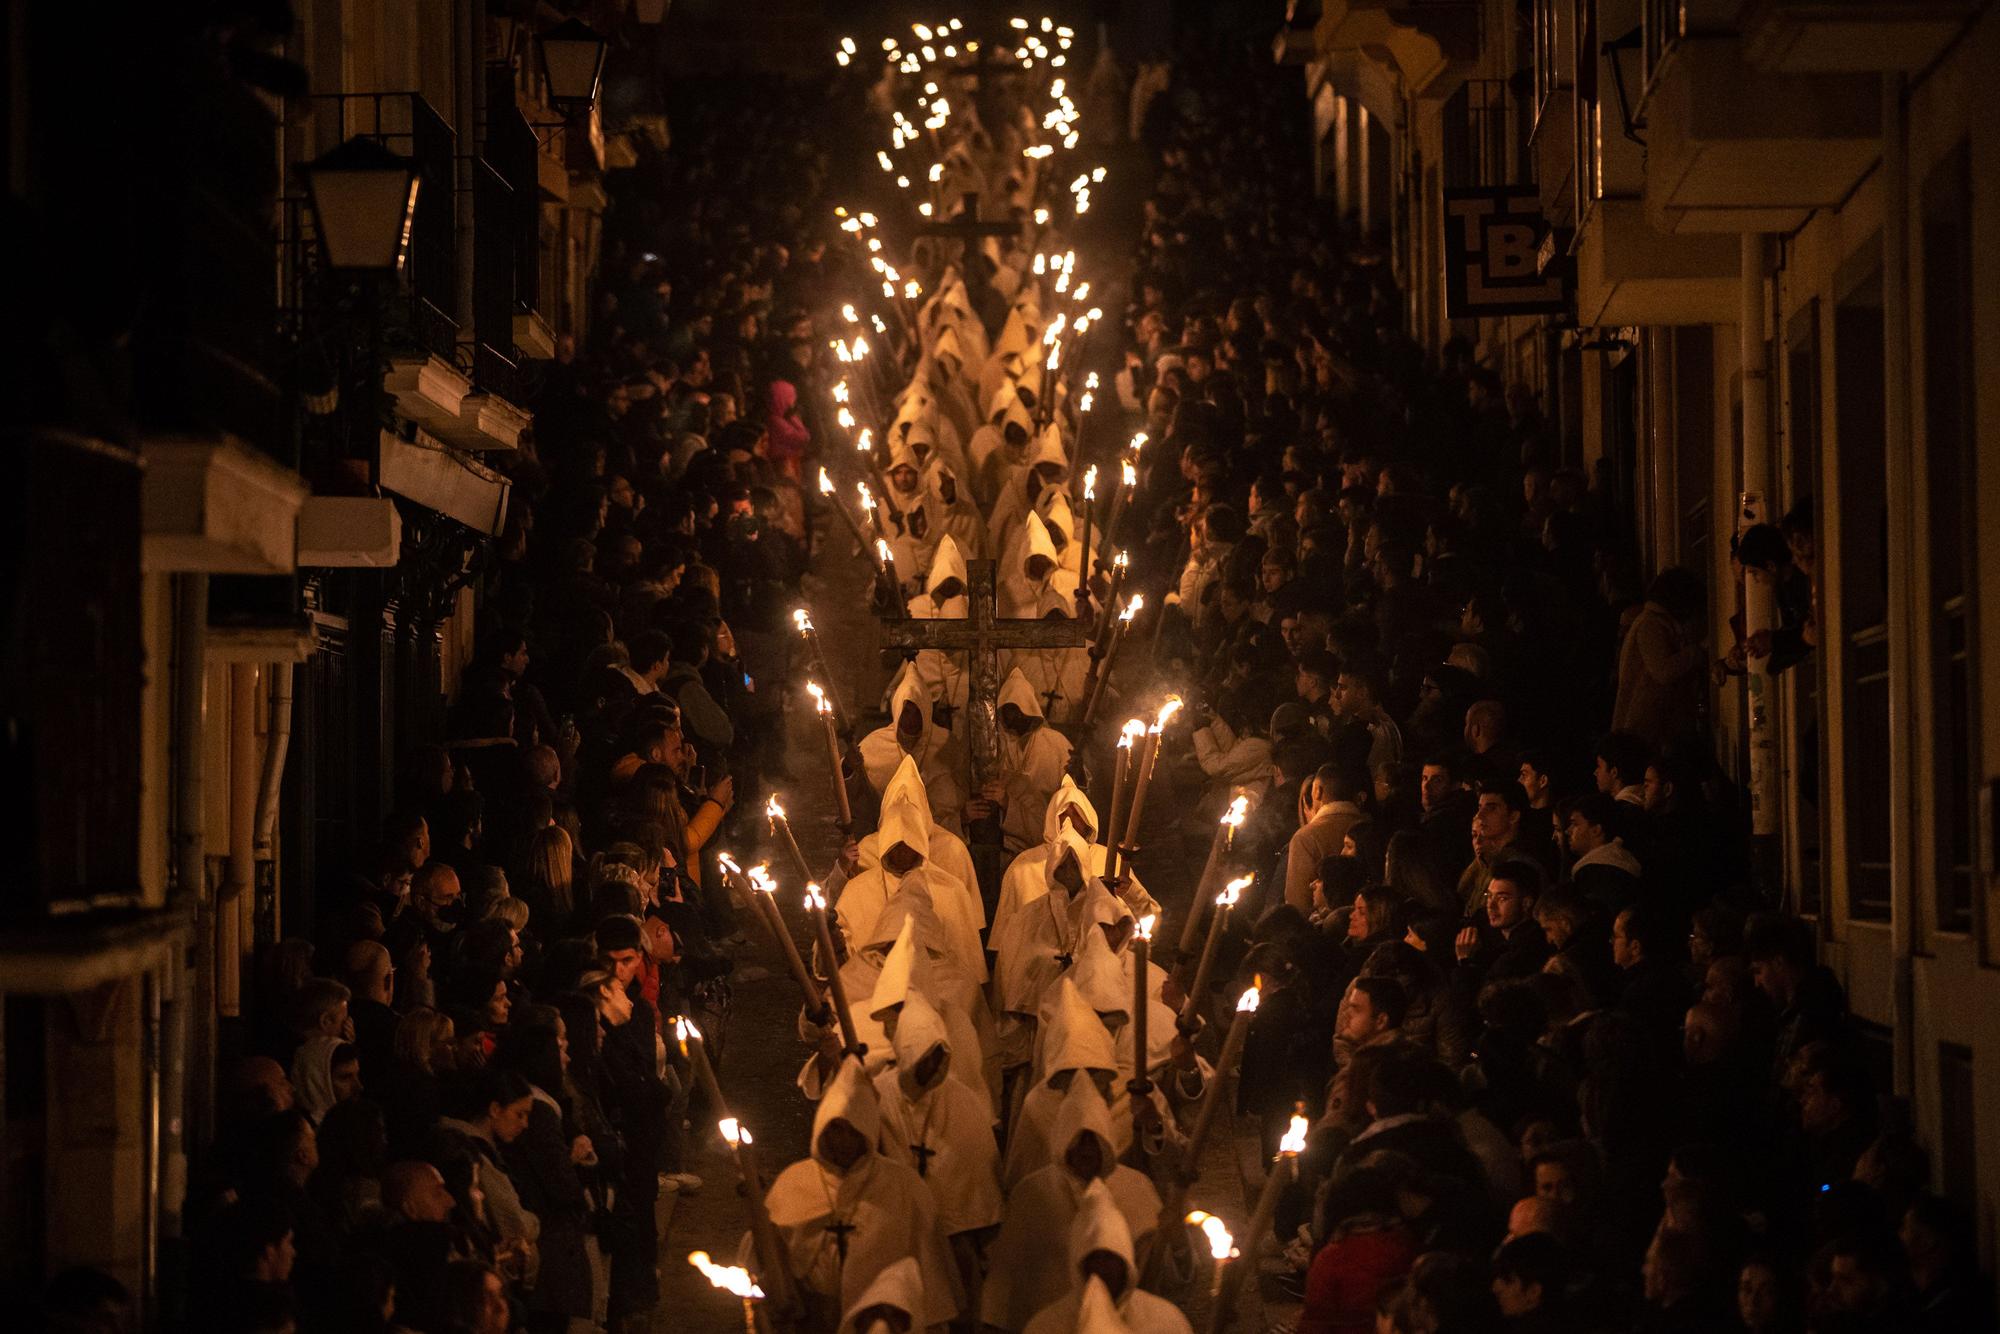 GALERÍA | La procesión de la Buena Muerte, en imágenes